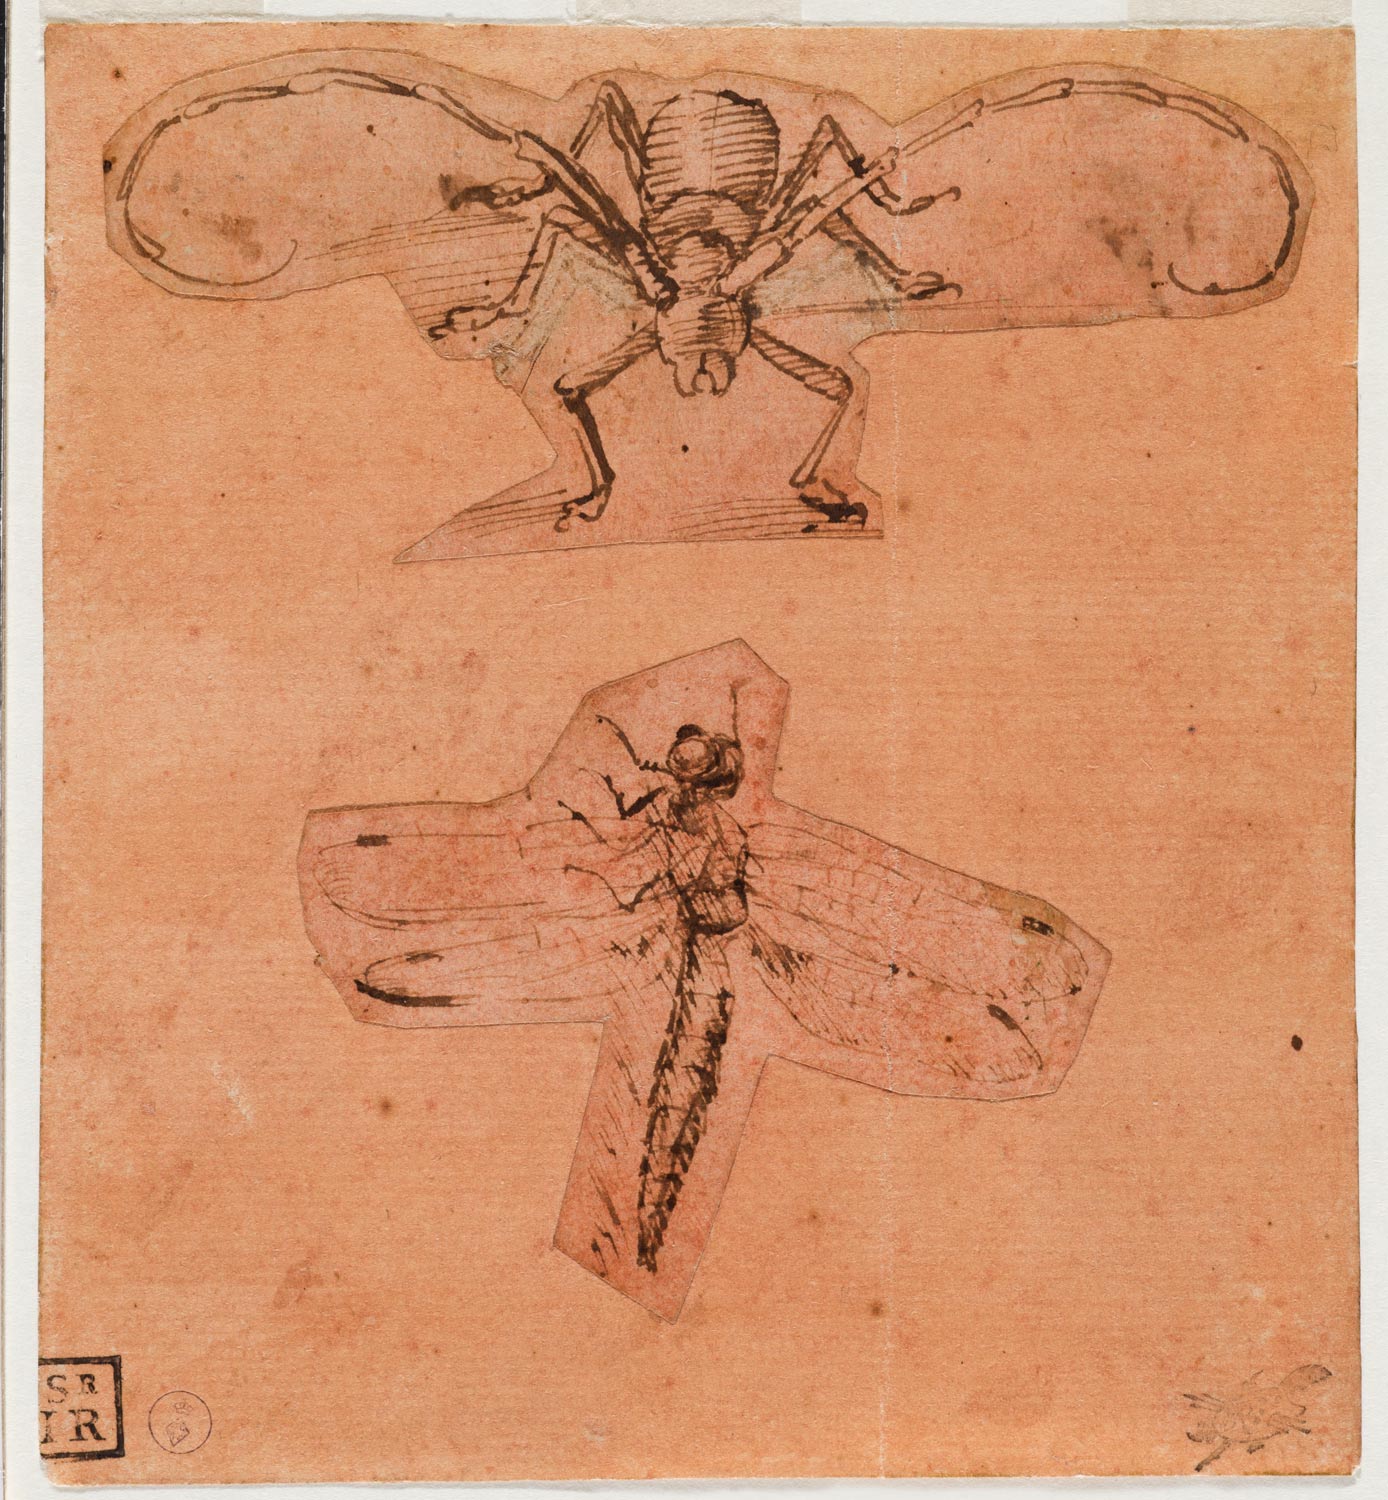 Leonardo da Vinci, Studi di insetti (1480-1490 circa disegno in alto, 1503-1505 circa disegno in basso; penna e inchiostro su carta preparata di rosso, 129 x 118 mm; Torino, Musei Reali-Biblioteca Reale, Dis. It. Scat. 1/22; 15581 D.C.)